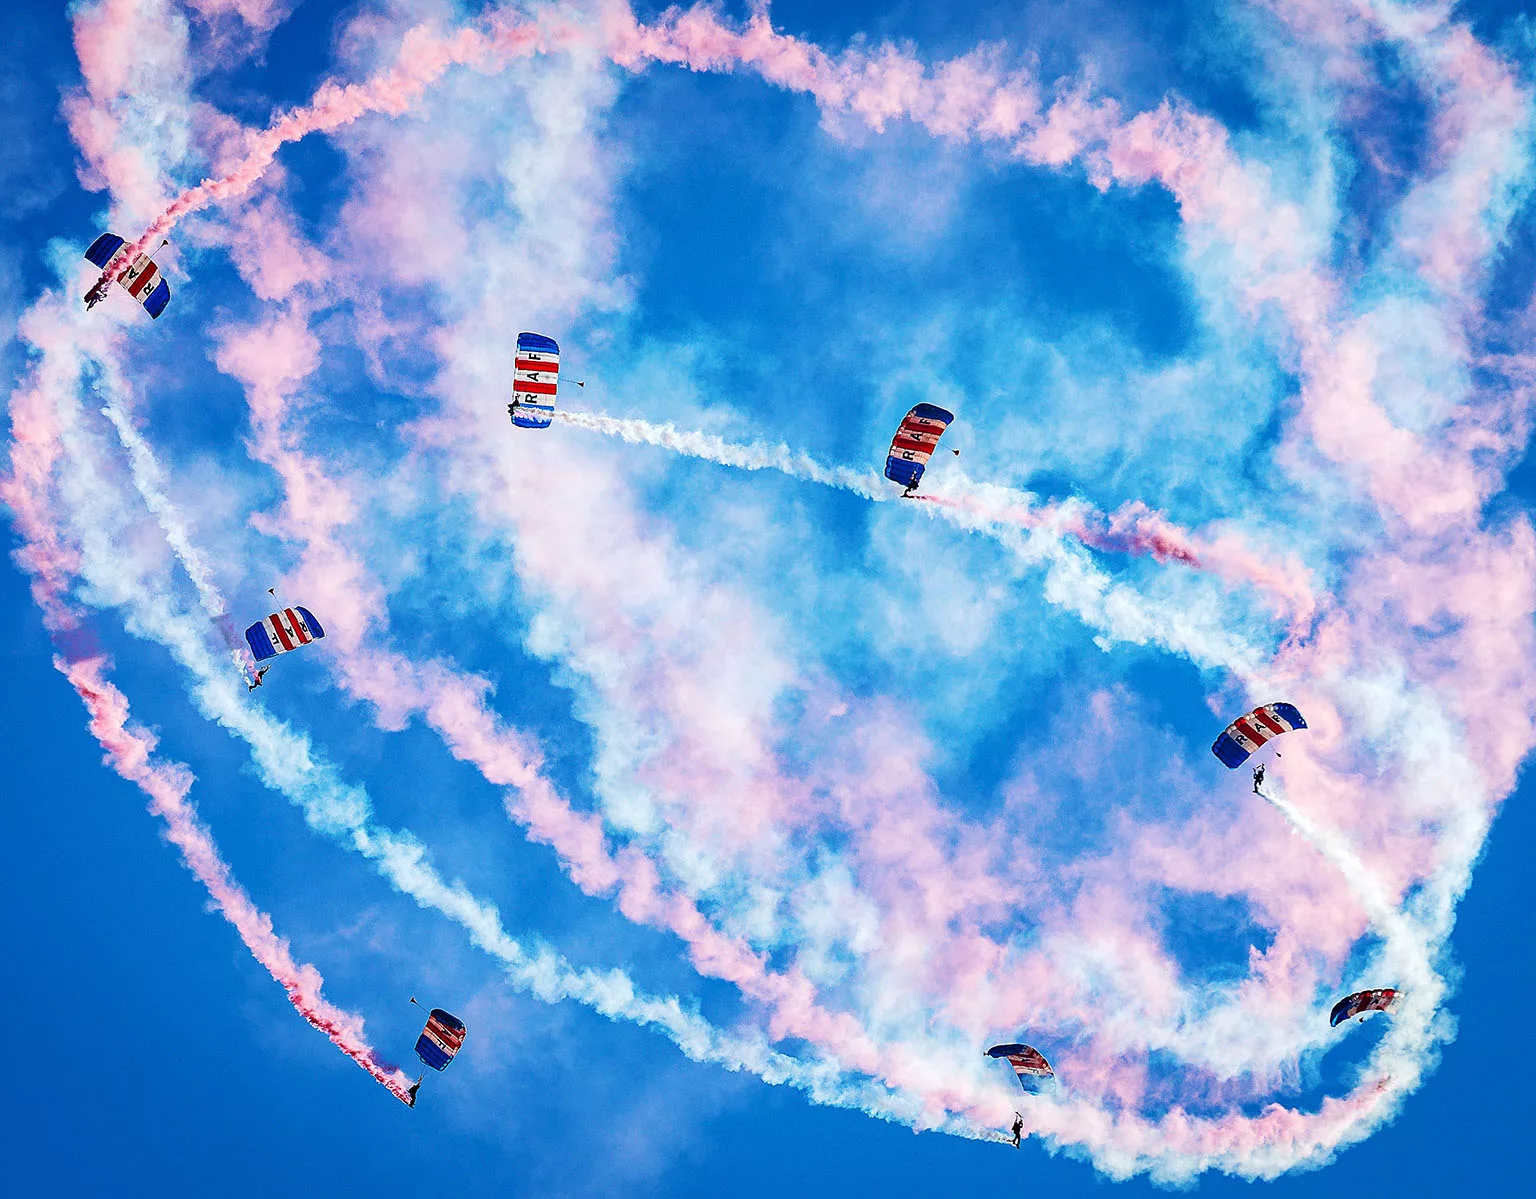 RAF Falcons parachute display team 2023 season launch